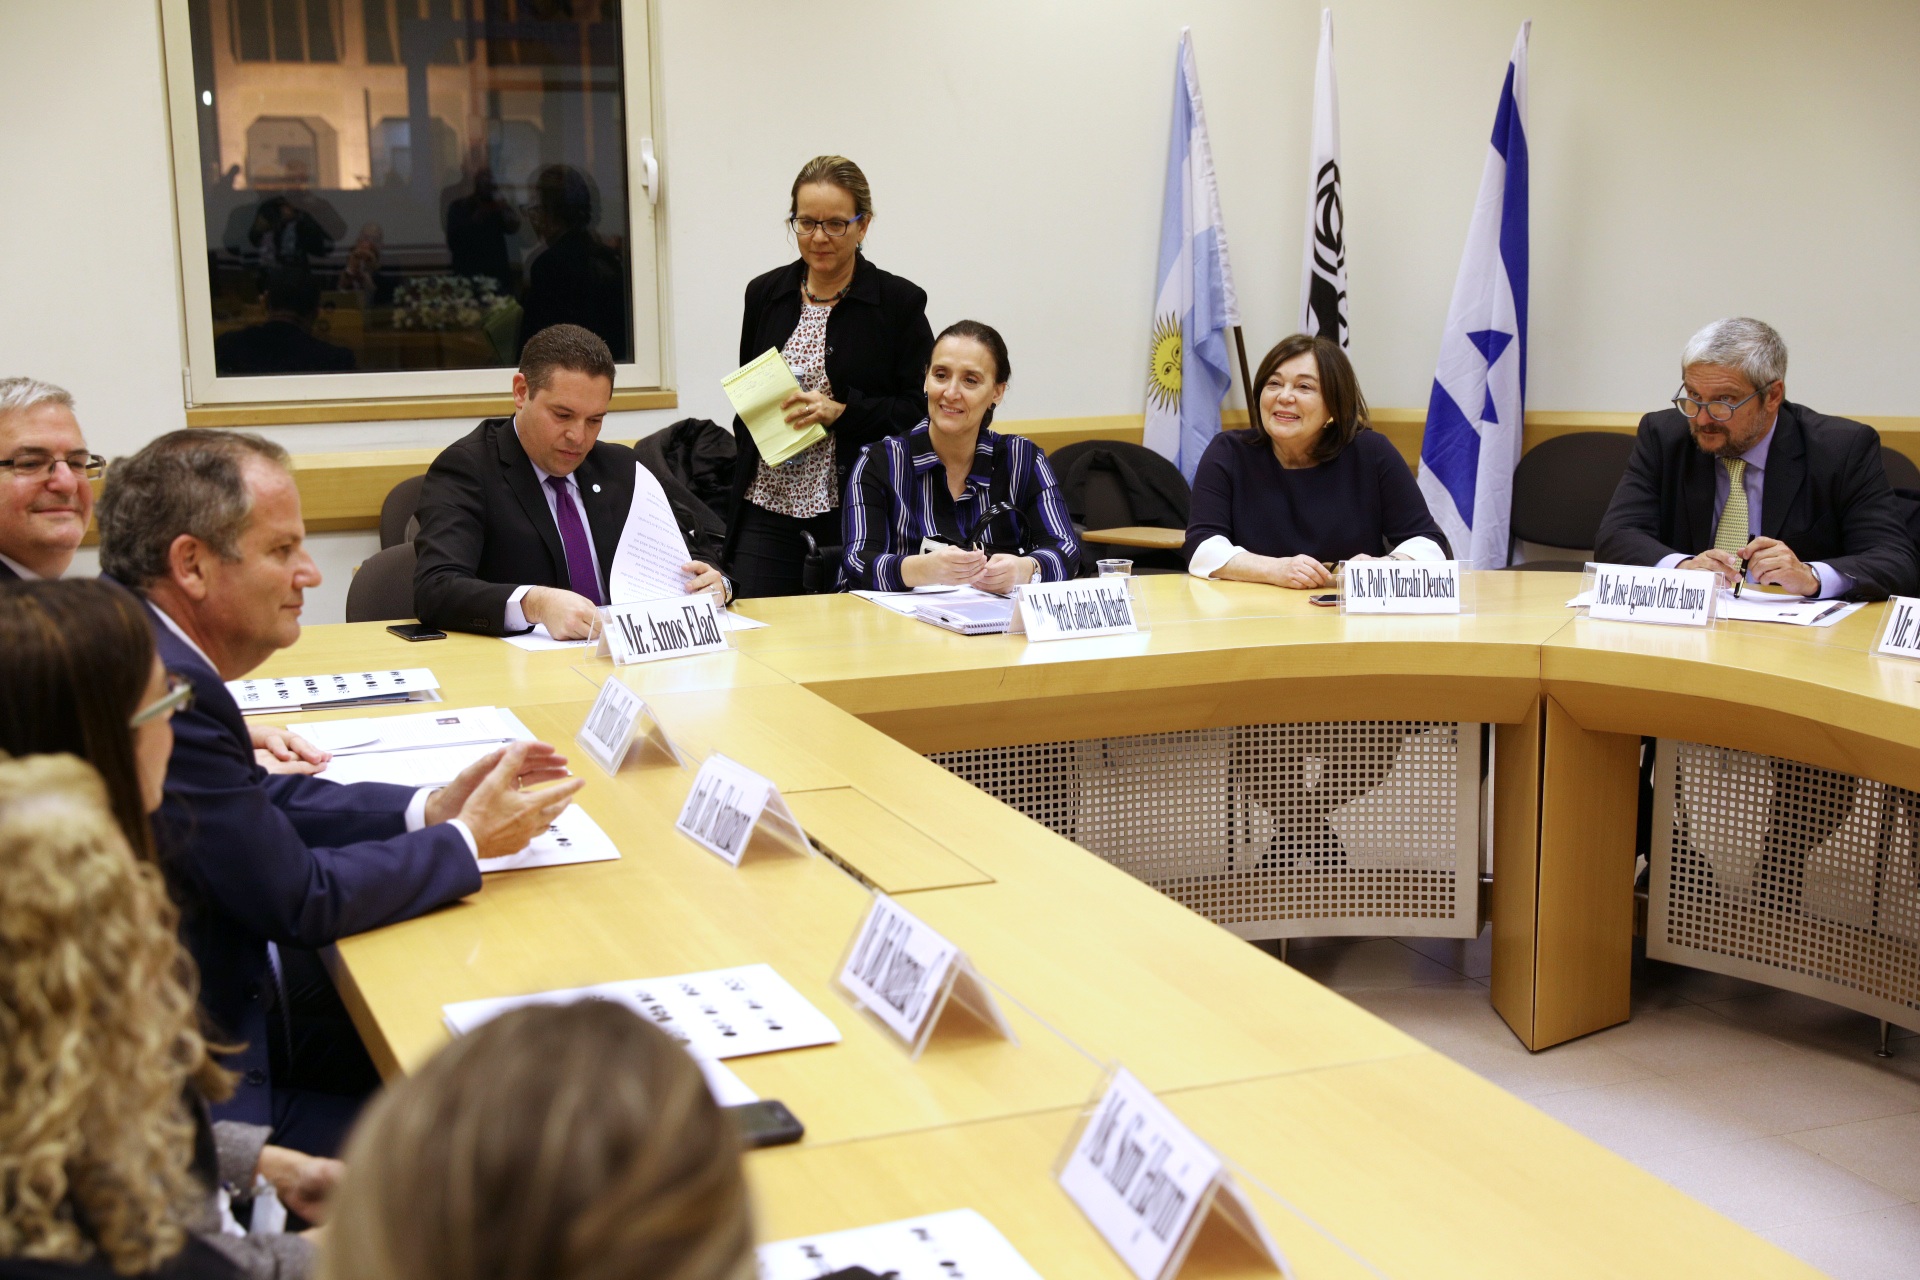 Michetti en Israel: visita a centro modelo de discapacidad y reunión con ministro de ciencia